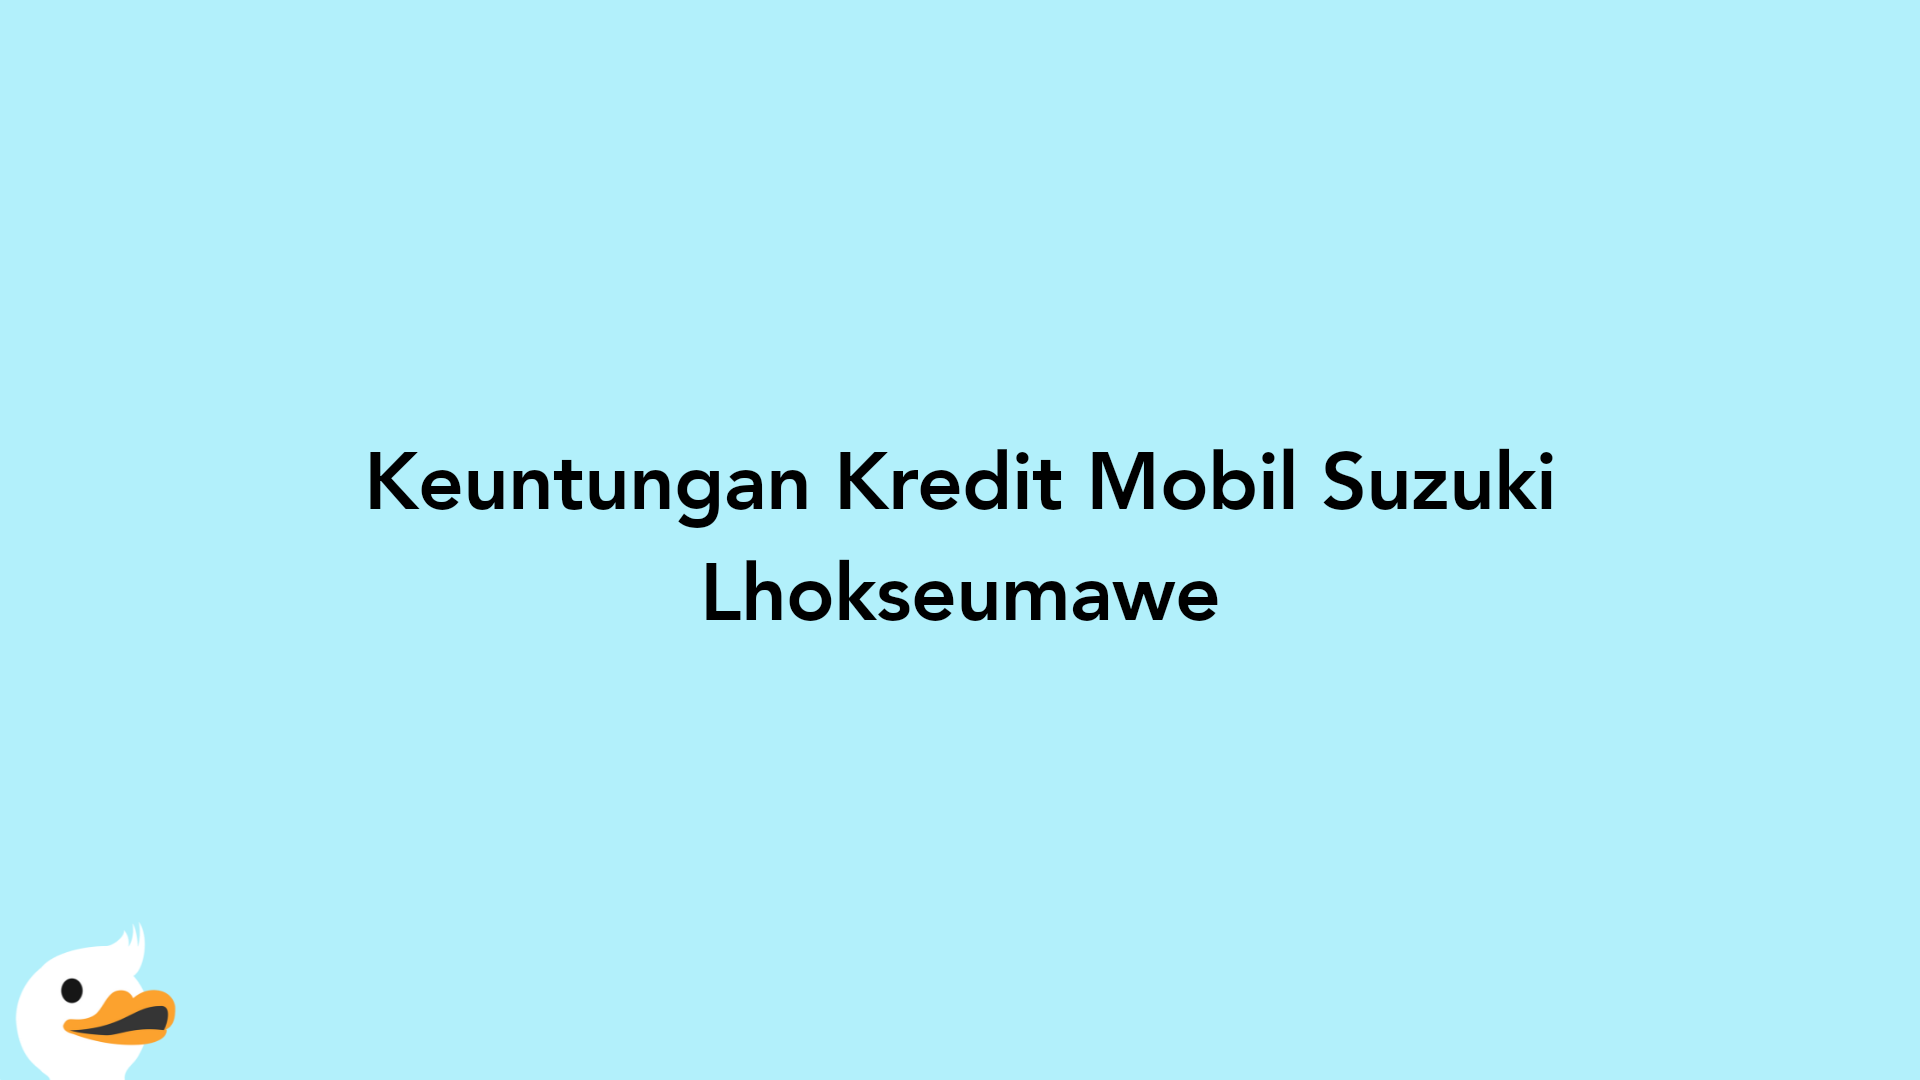 Keuntungan Kredit Mobil Suzuki Lhokseumawe